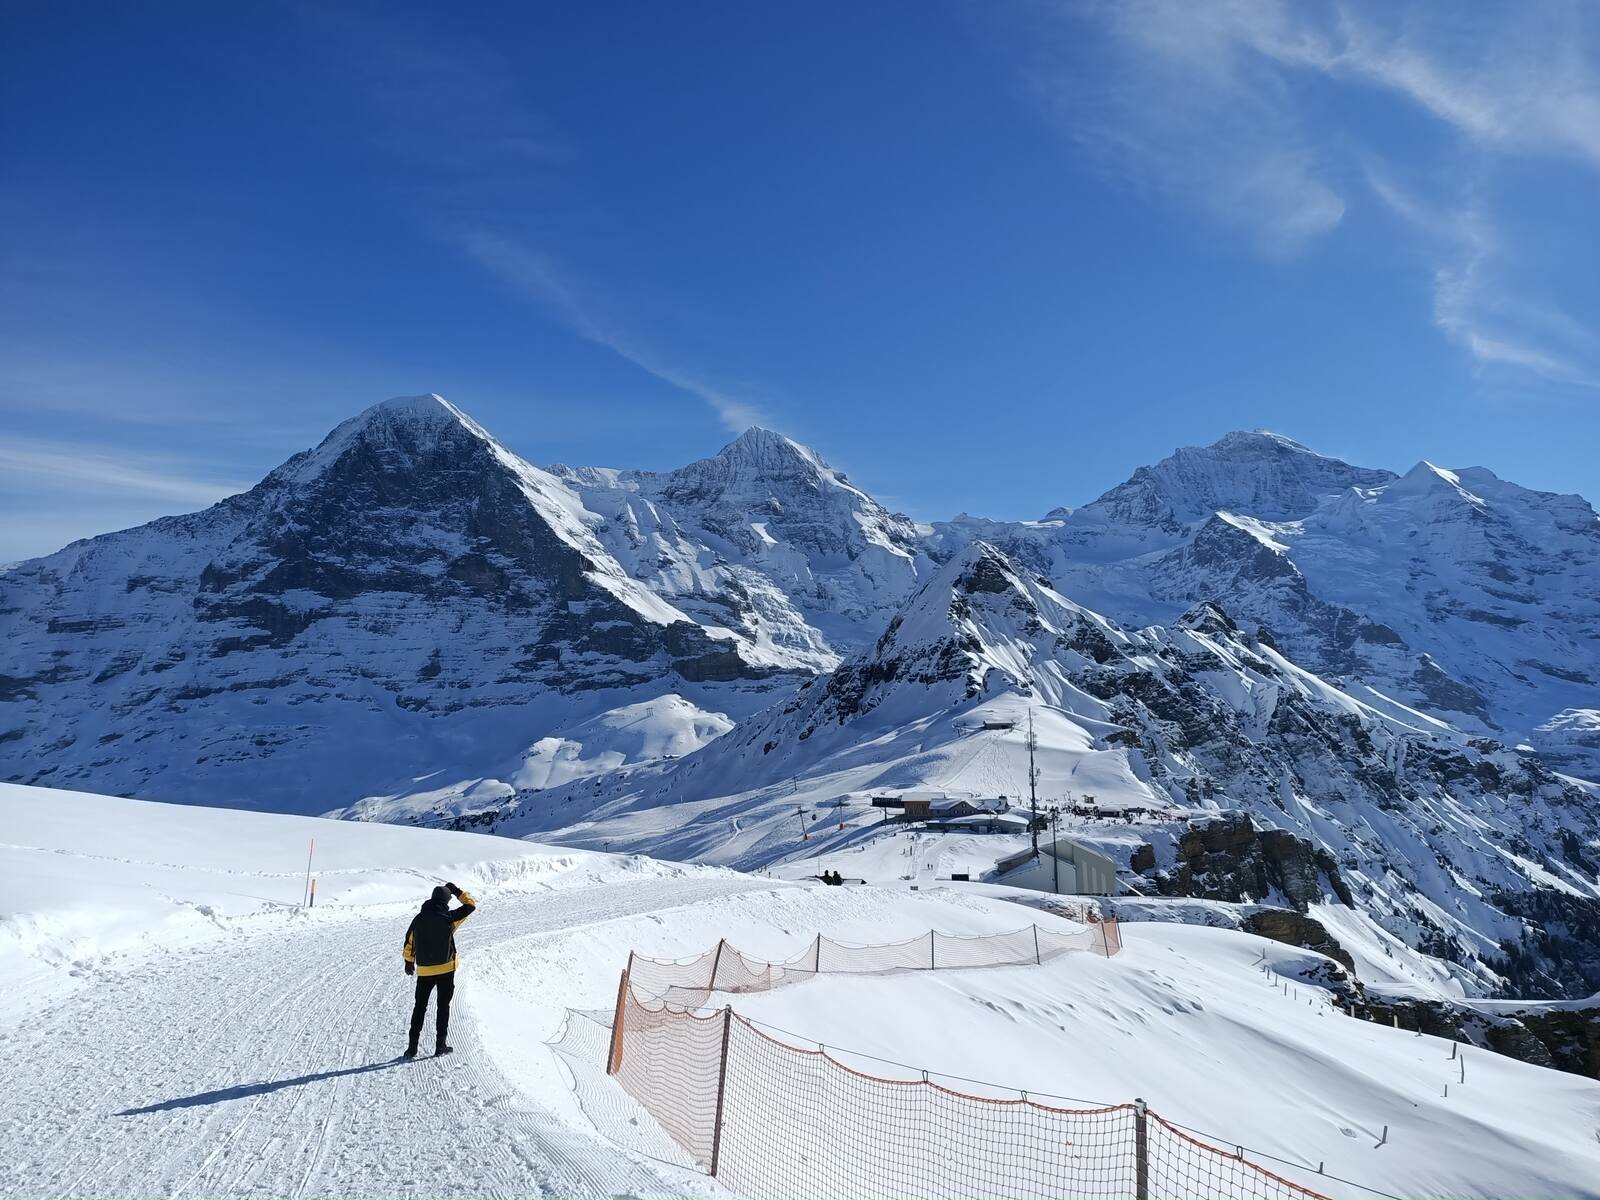 My Ski Holidays 2021 in Mürren in the Bernese Alps and Visit to the Jungfraujoch, Männlichen and Grindelwald, Switzerland